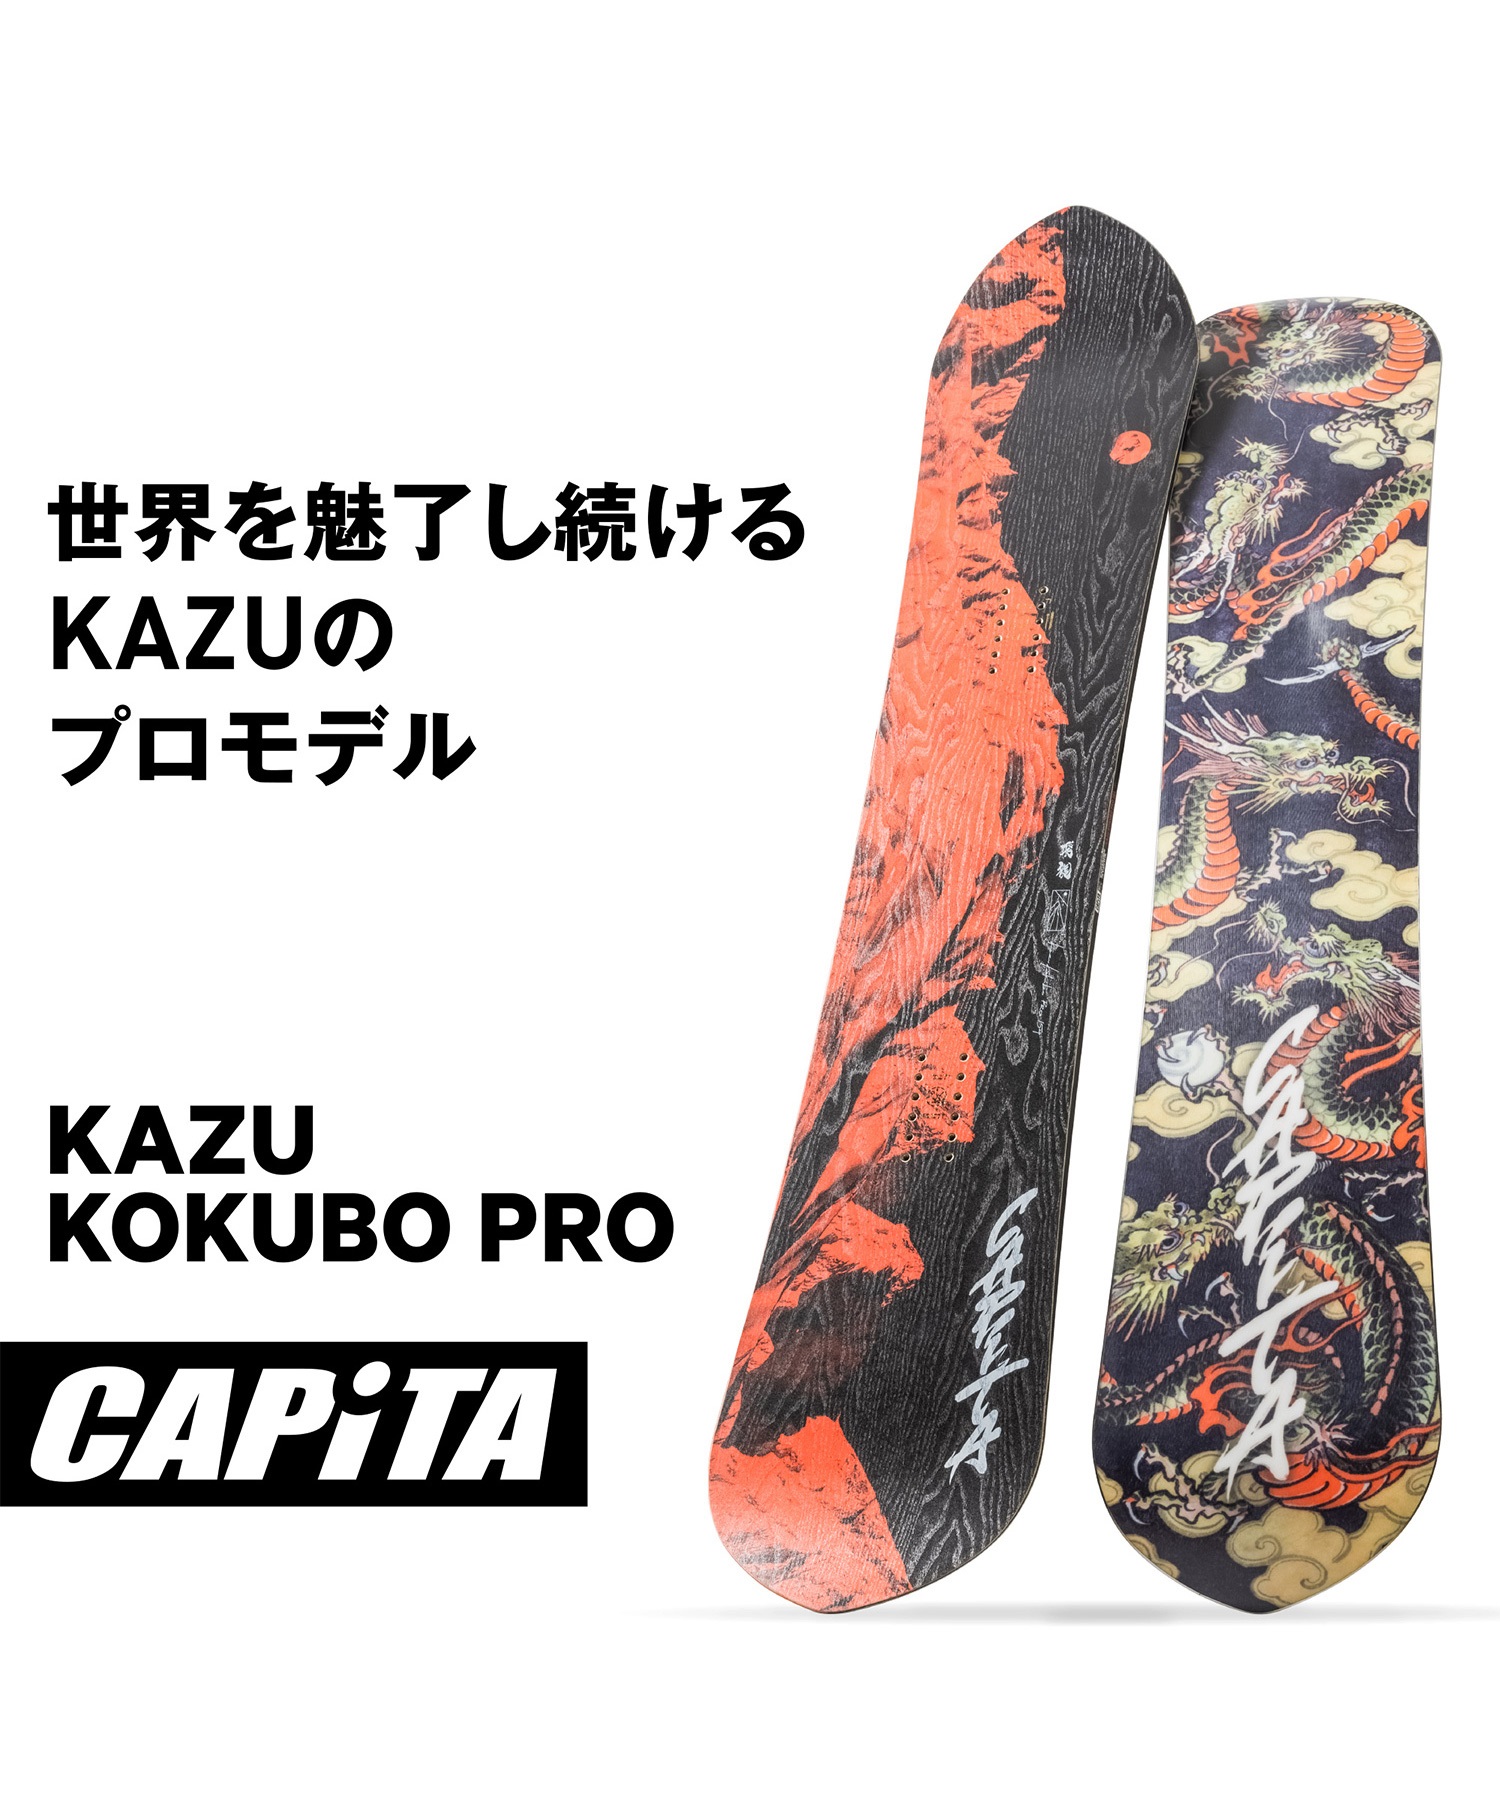 スノーボード 板 メンズ CAPITA キャピタ KAZU KOKUBO PRO 23-24モデル ムラサキスポーツ KK B16(KAZUKOKUBOPRO-151cm)